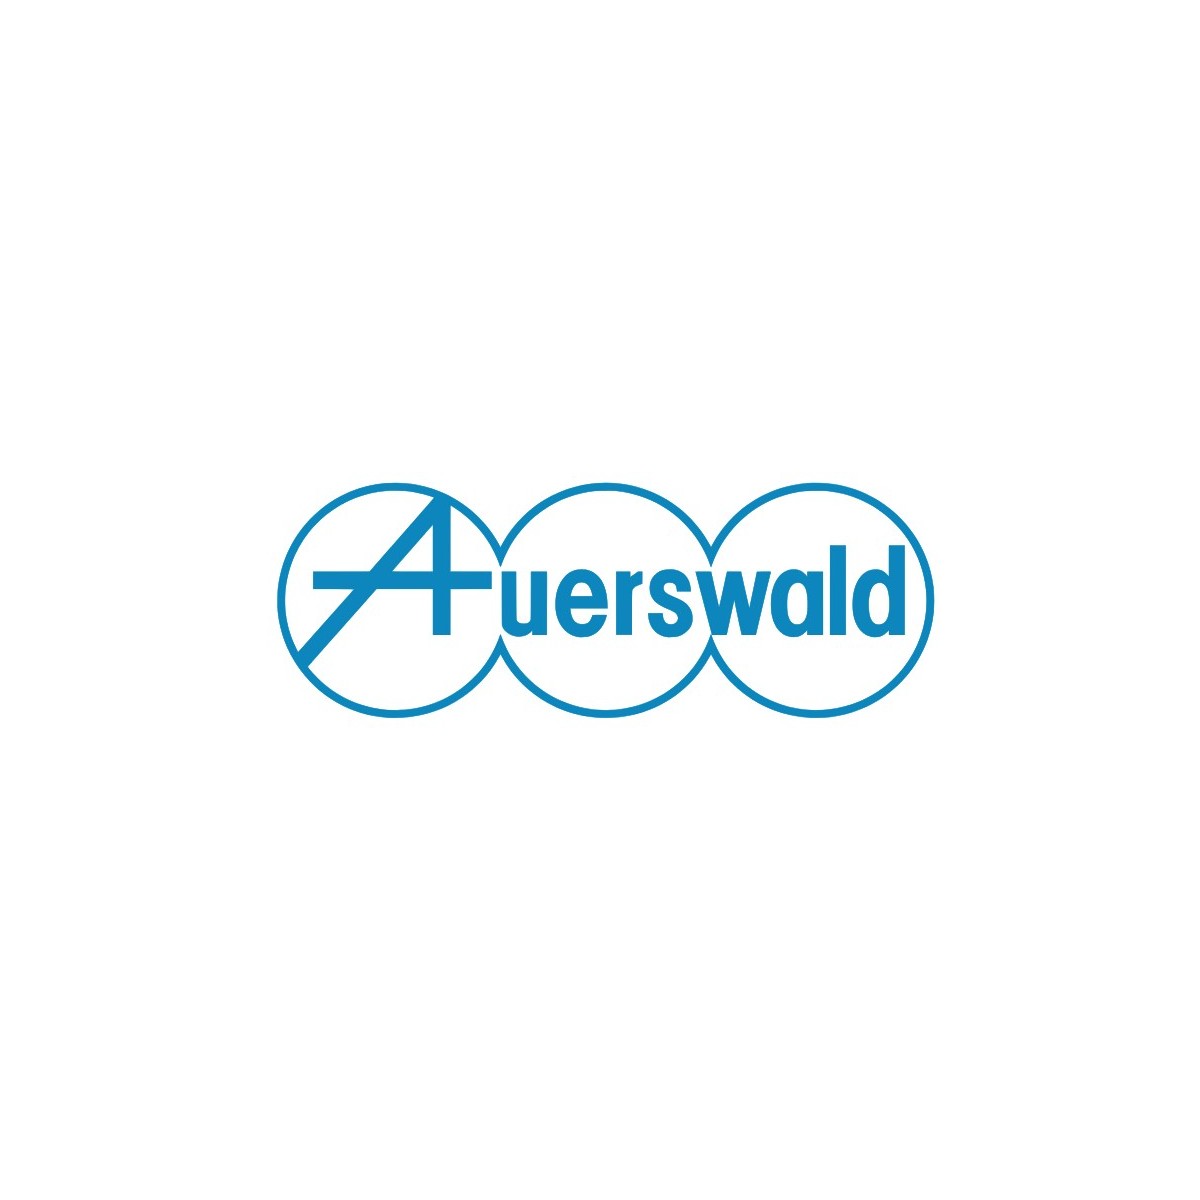 Auerswald COMmander 6000R Xtension - Erweiterungskarte - Auerswald - COMmander 6000R